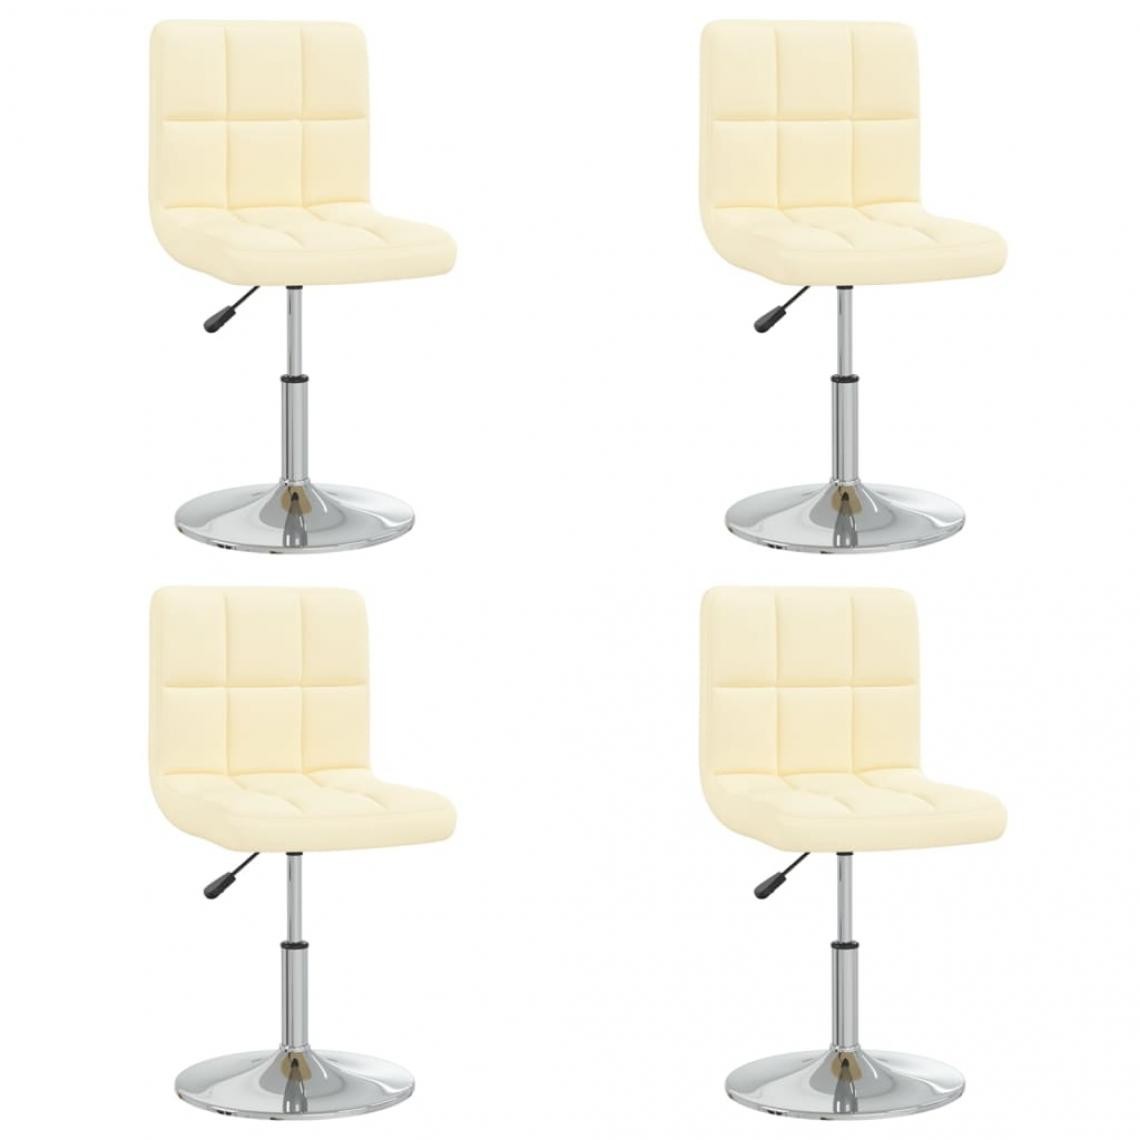 Decoshop26 - Lot de 4 chaises de salle à manger cuisine design contemporain similicuir crème CDS021462 - Chaises